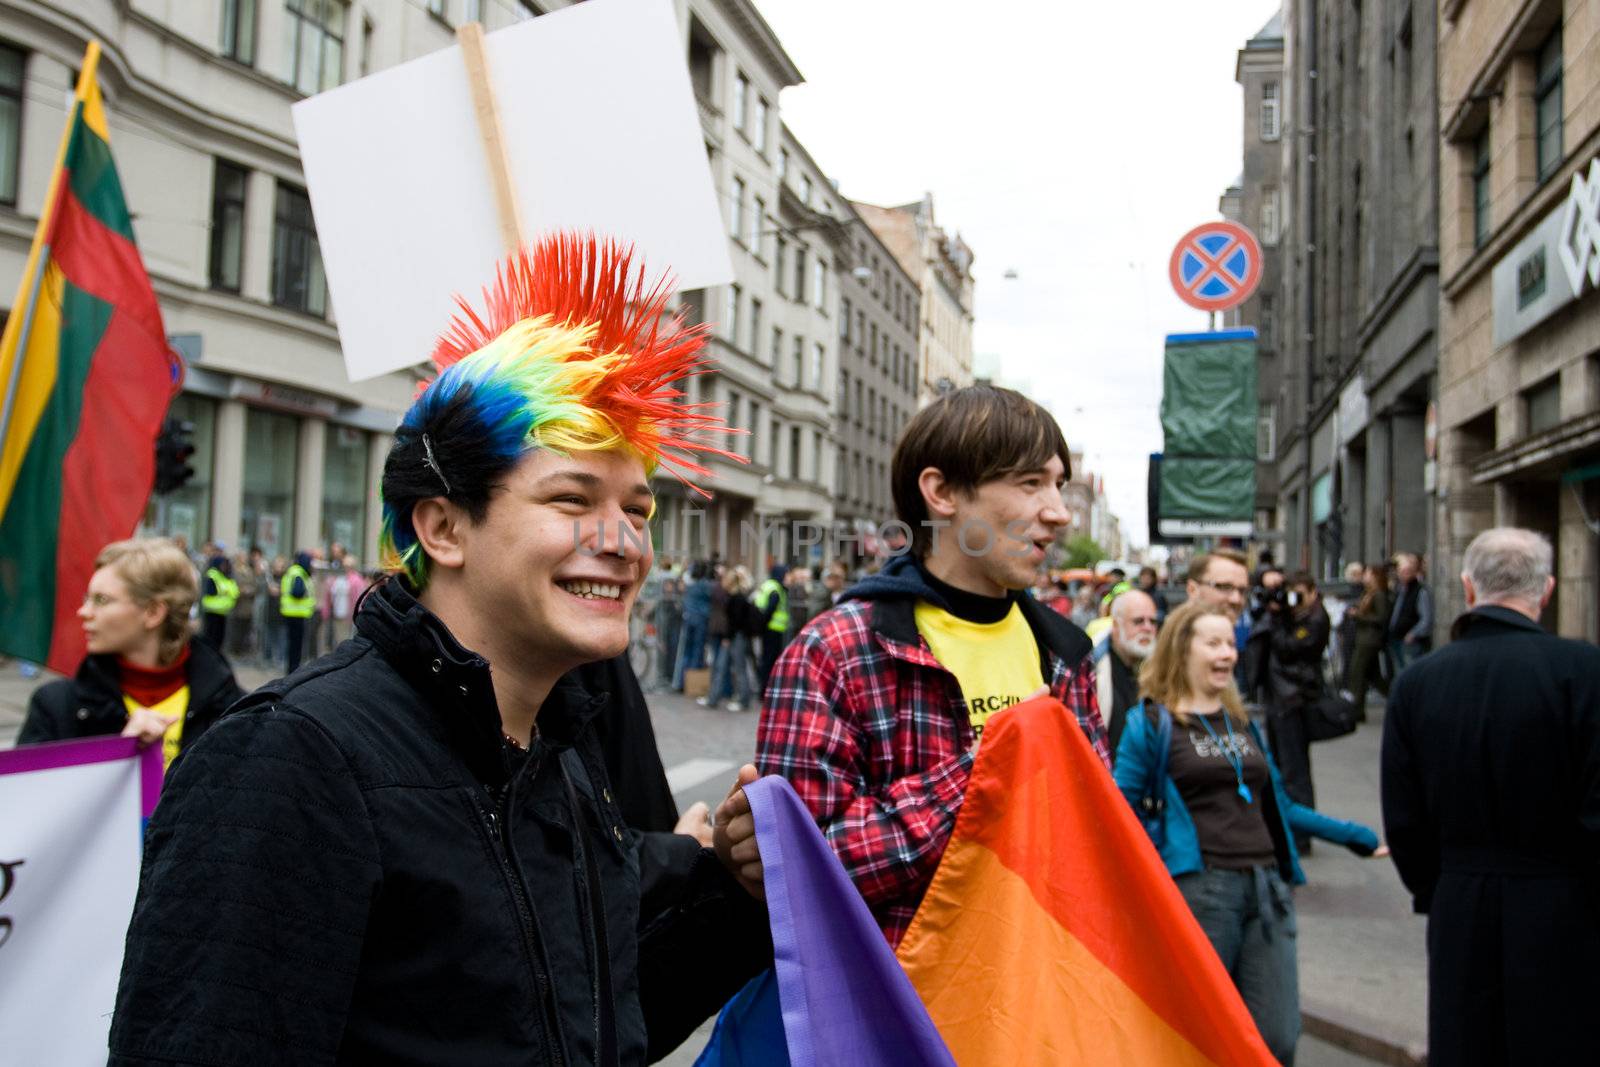 Riga gay pride by ints